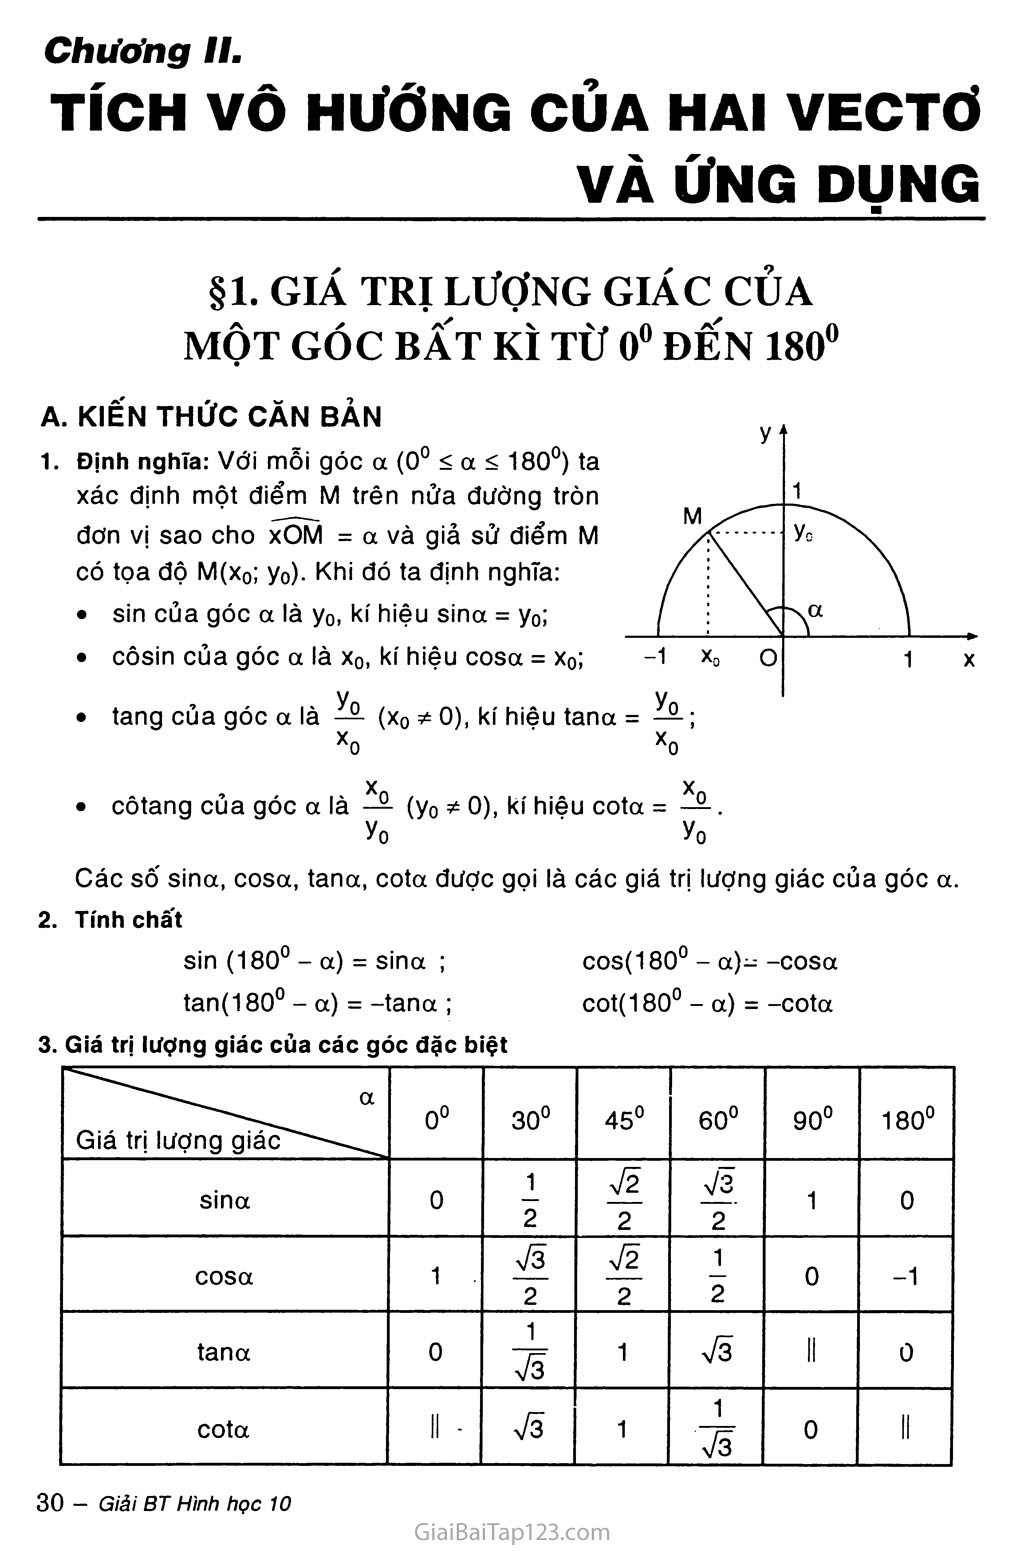 Bài 1. Giá trị lượng giác của một góc bất kỳ từ 0 độ đến 180 độ trang 1